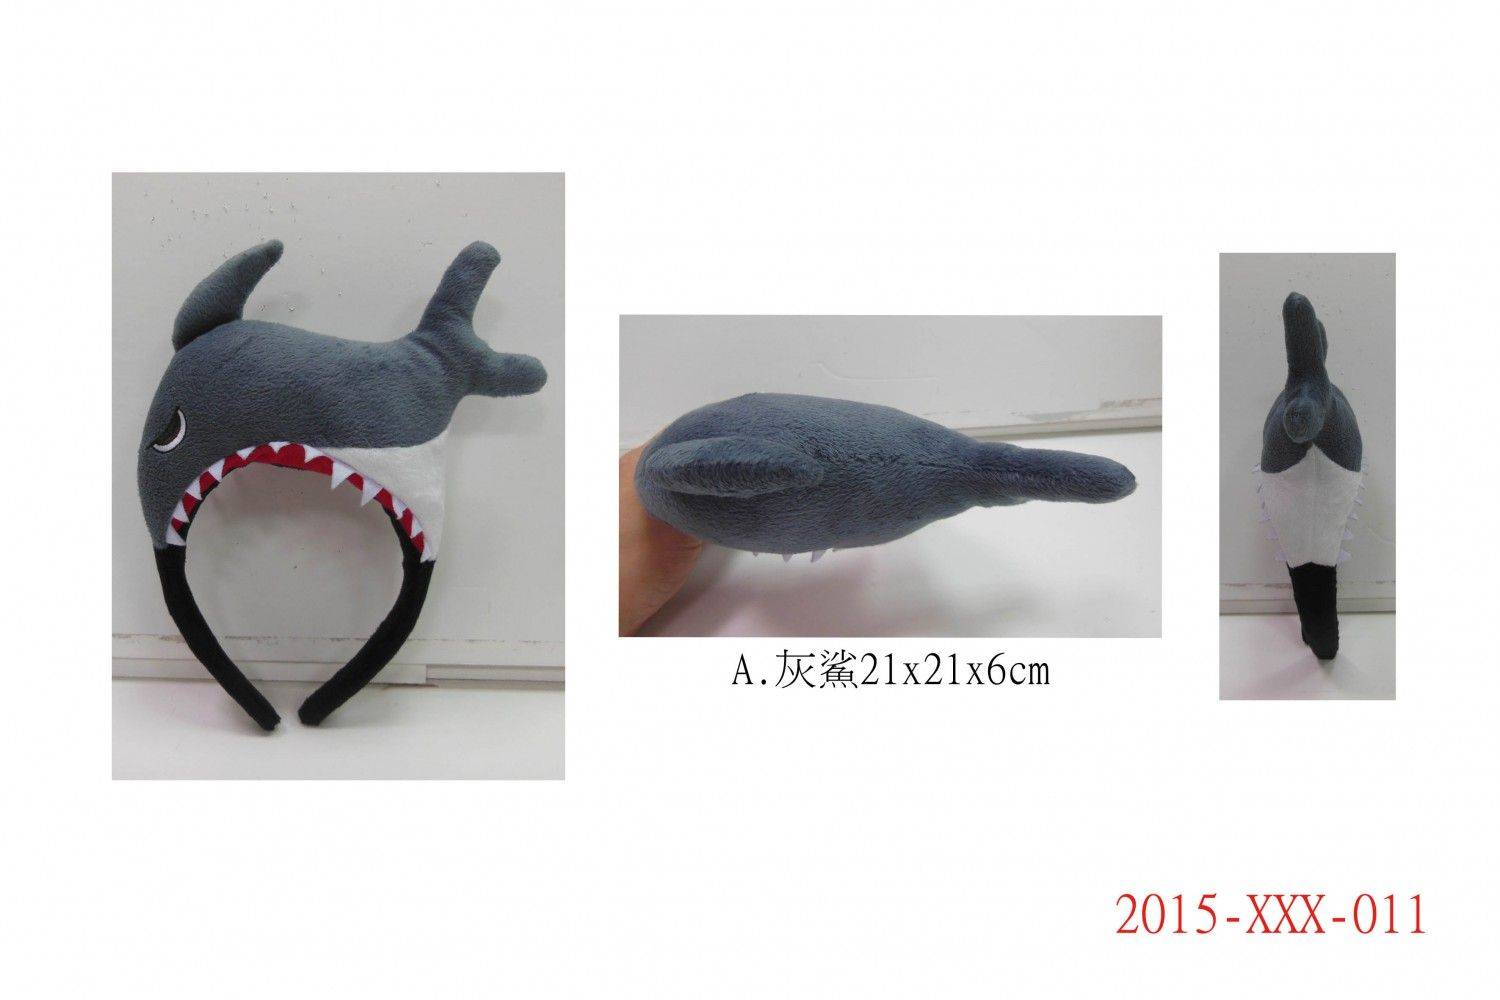 2015-XXX-011A-H動物造型髮箍 A.灰鯊21x21x6cm